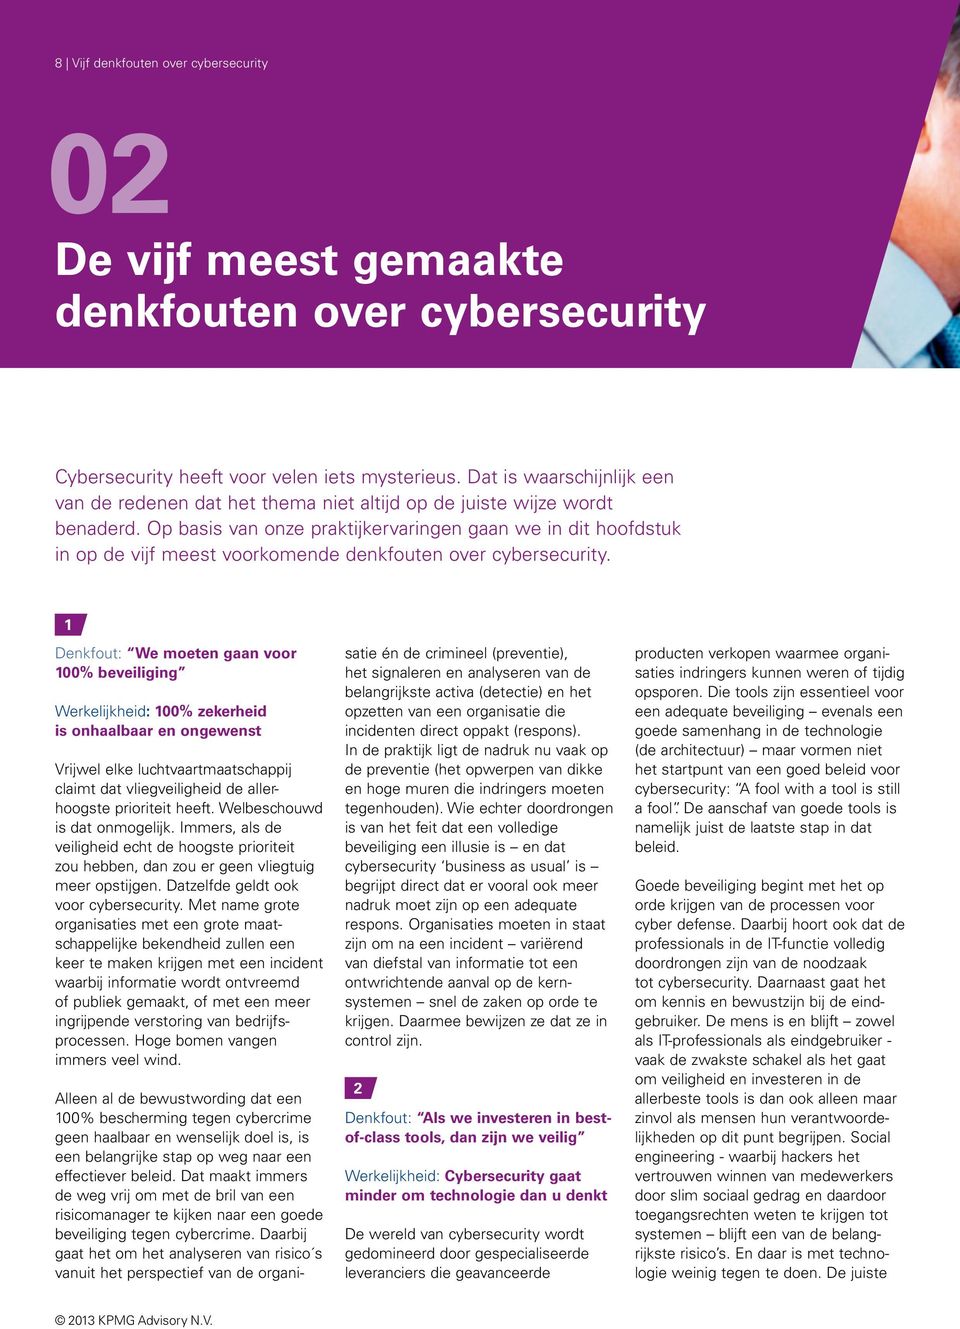 Op basis van onze praktijkervaringen gaan we in dit hoofdstuk in op de vijf meest voorkomende denkfouten over cybersecurity.